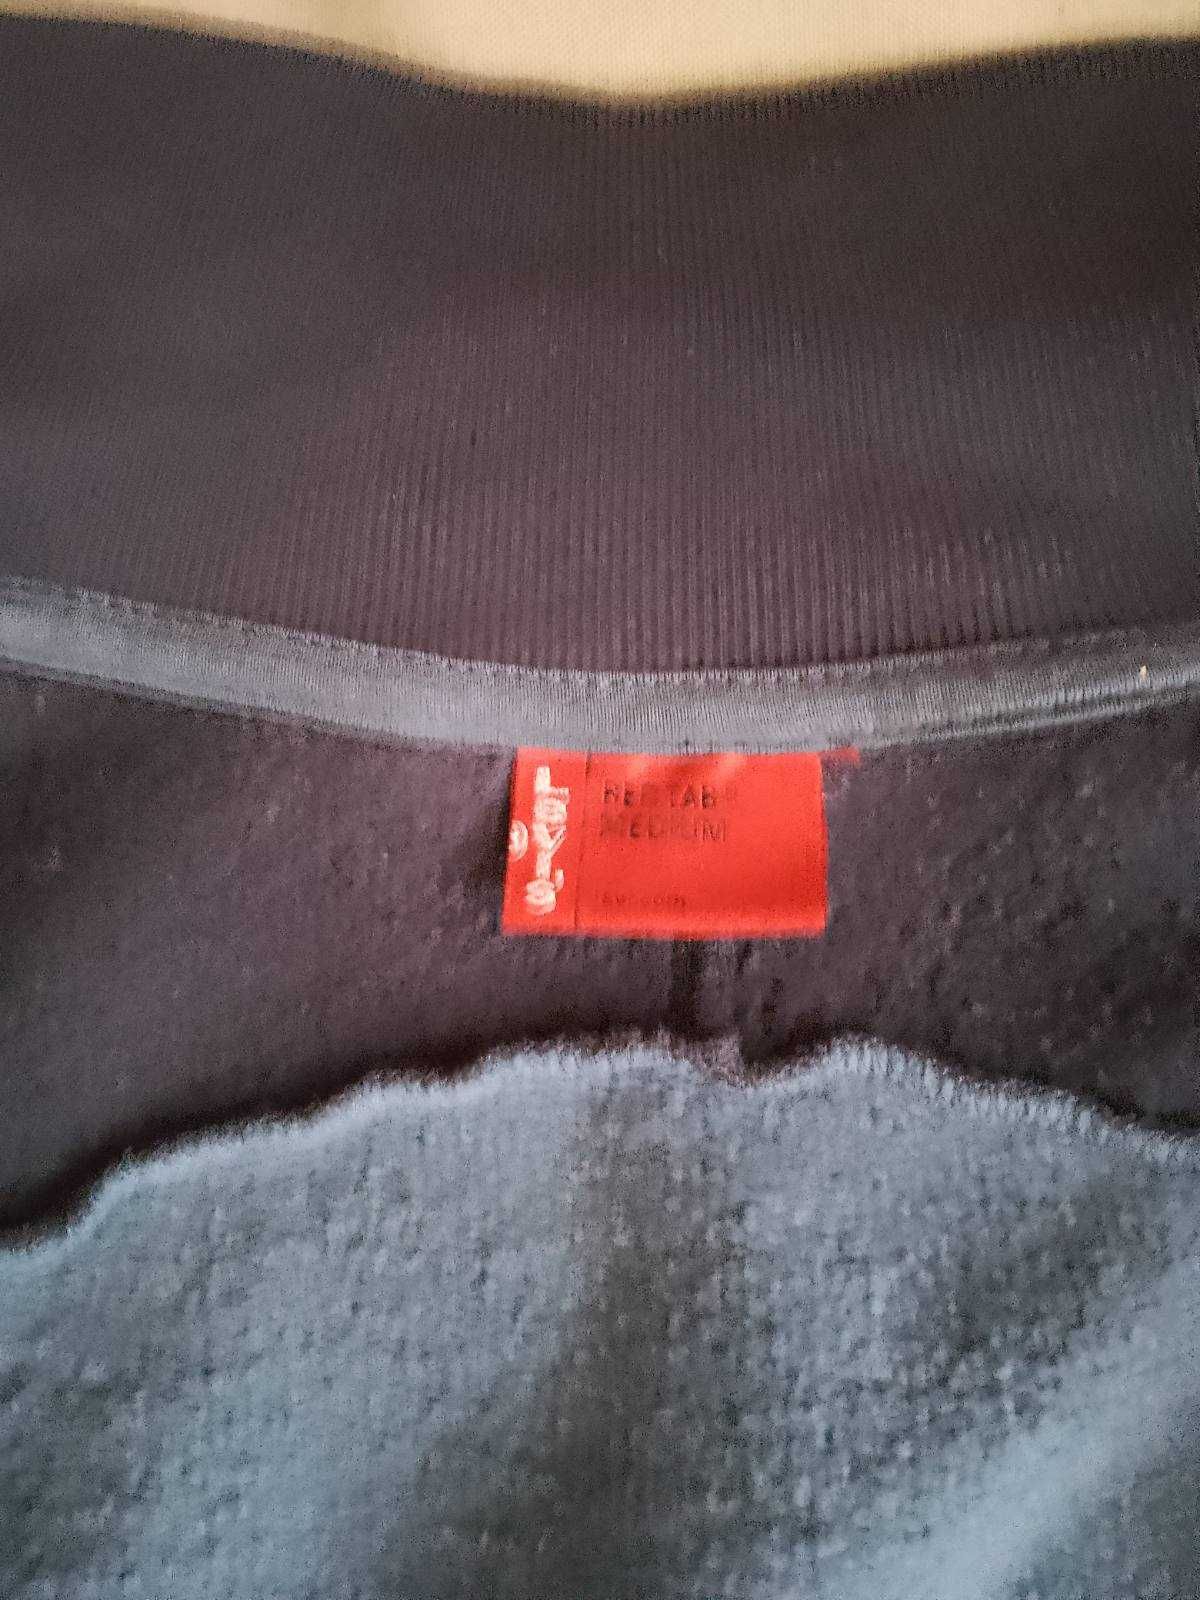 Куртка мужская фирменная Levi's: хлопковая, размер M, реглана